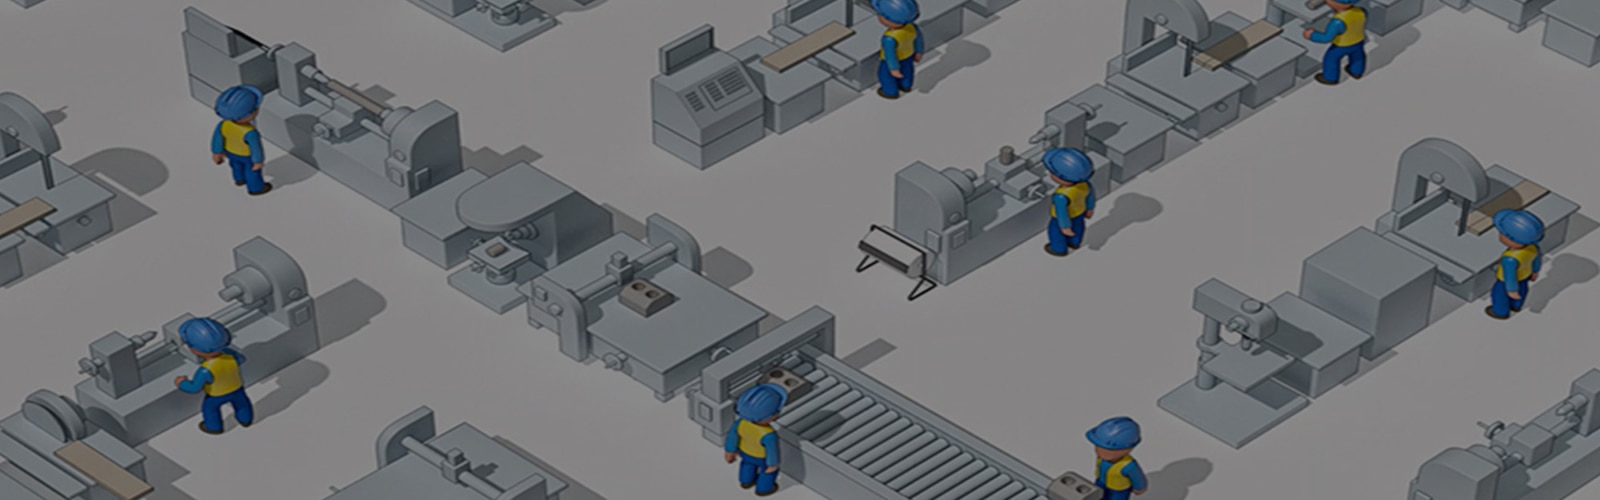 Ilustrirana slika industrijskih djelatnika sa sigurnosnim kacigama gledani odozgo u industrijskom okruženju. 